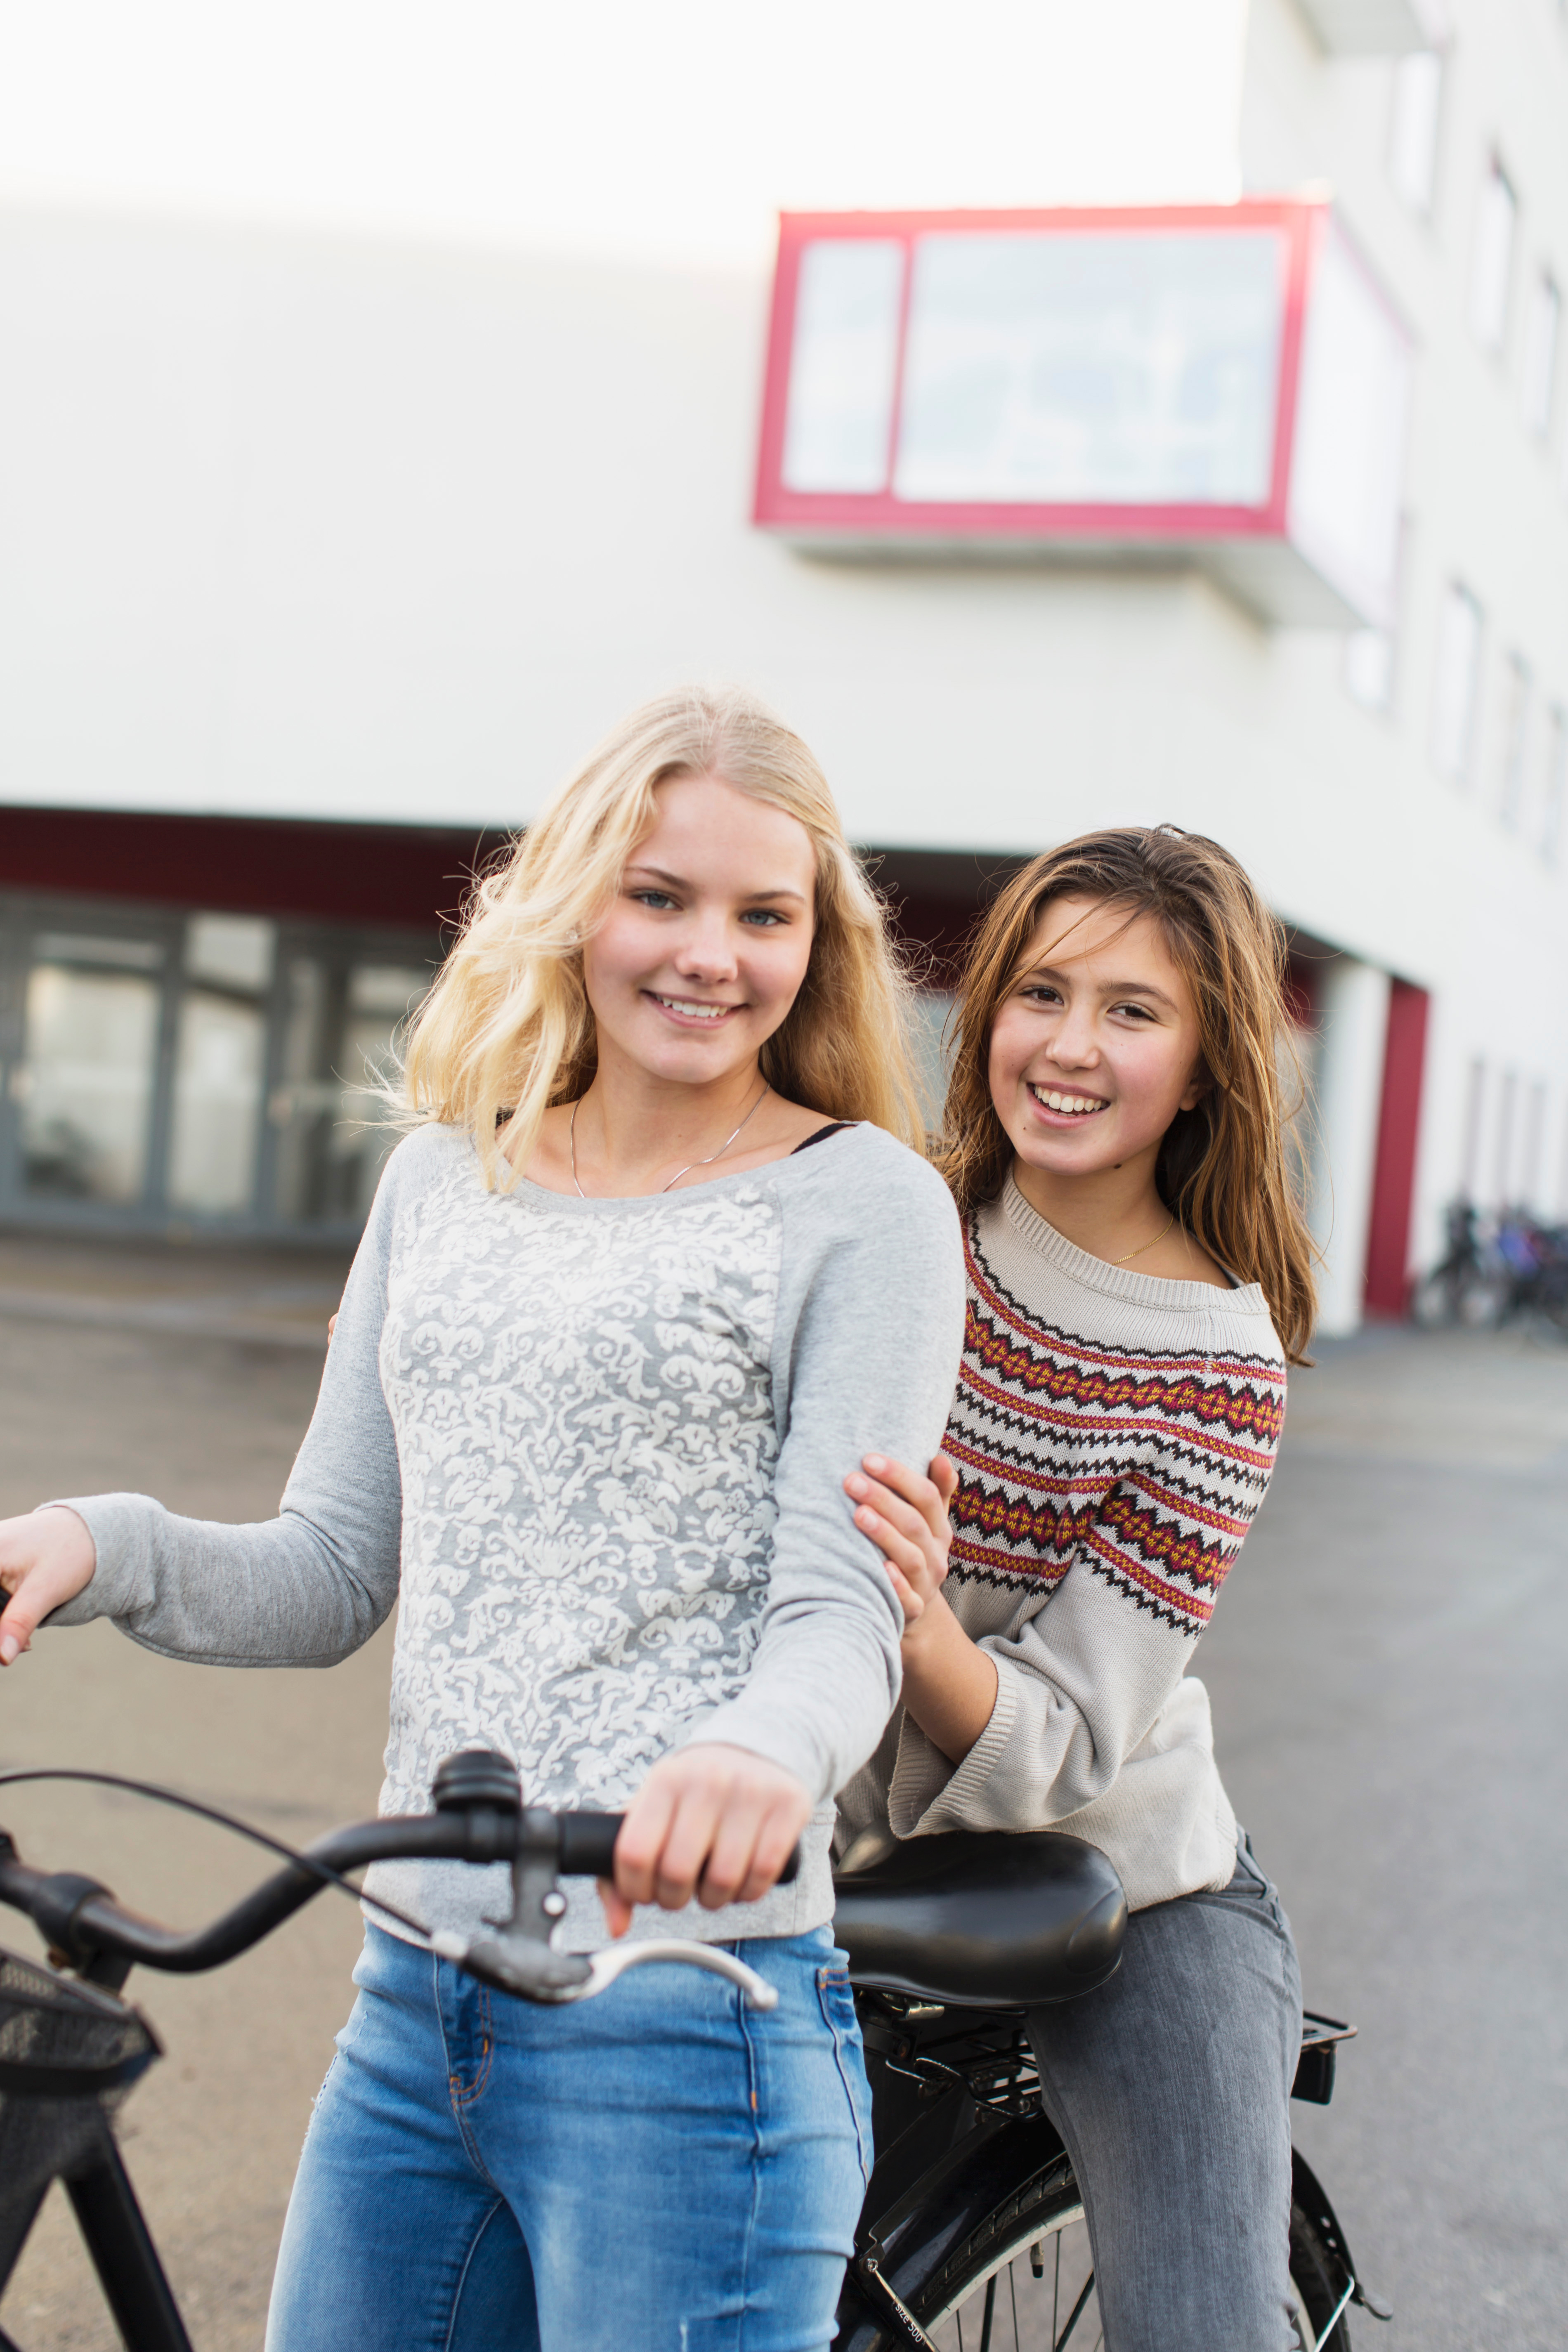 Zwei Schülerinnen stehen sich umarmend mit einem Fahrrad auf einem Parkplatz und lächeln in die Kamera.